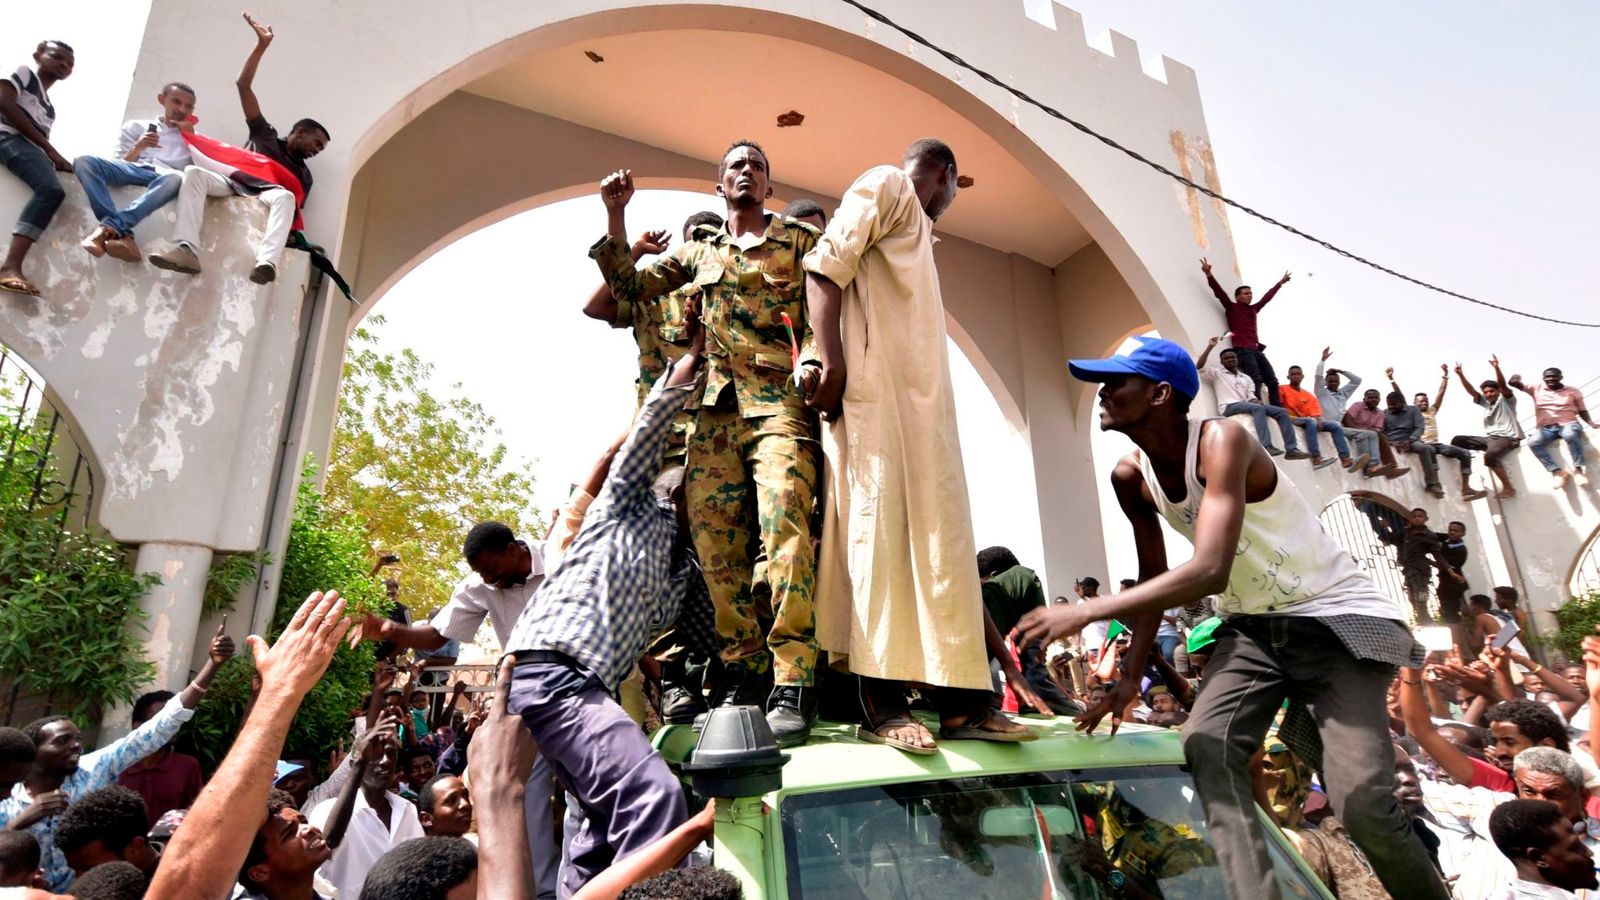 sudan protests khartoum sky news 4636967 - Blog